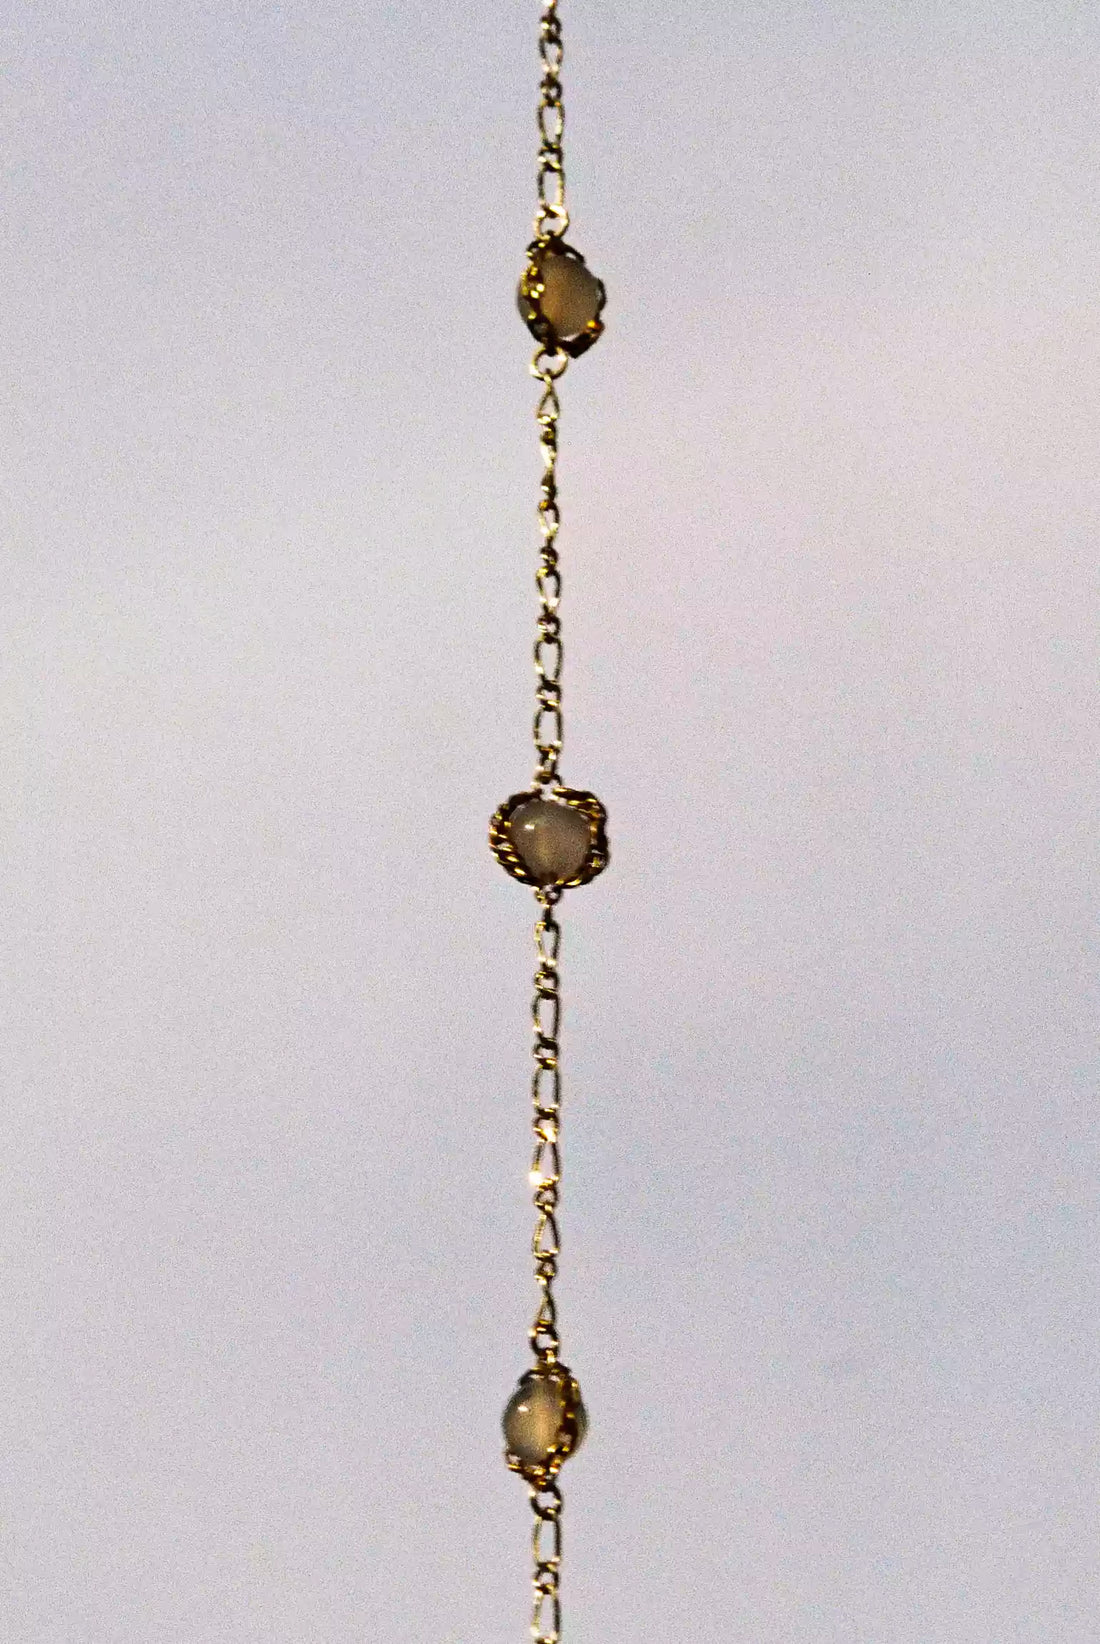 Le collier et ses trois quartz blanc entourés de chaîne plaquée or vintage.